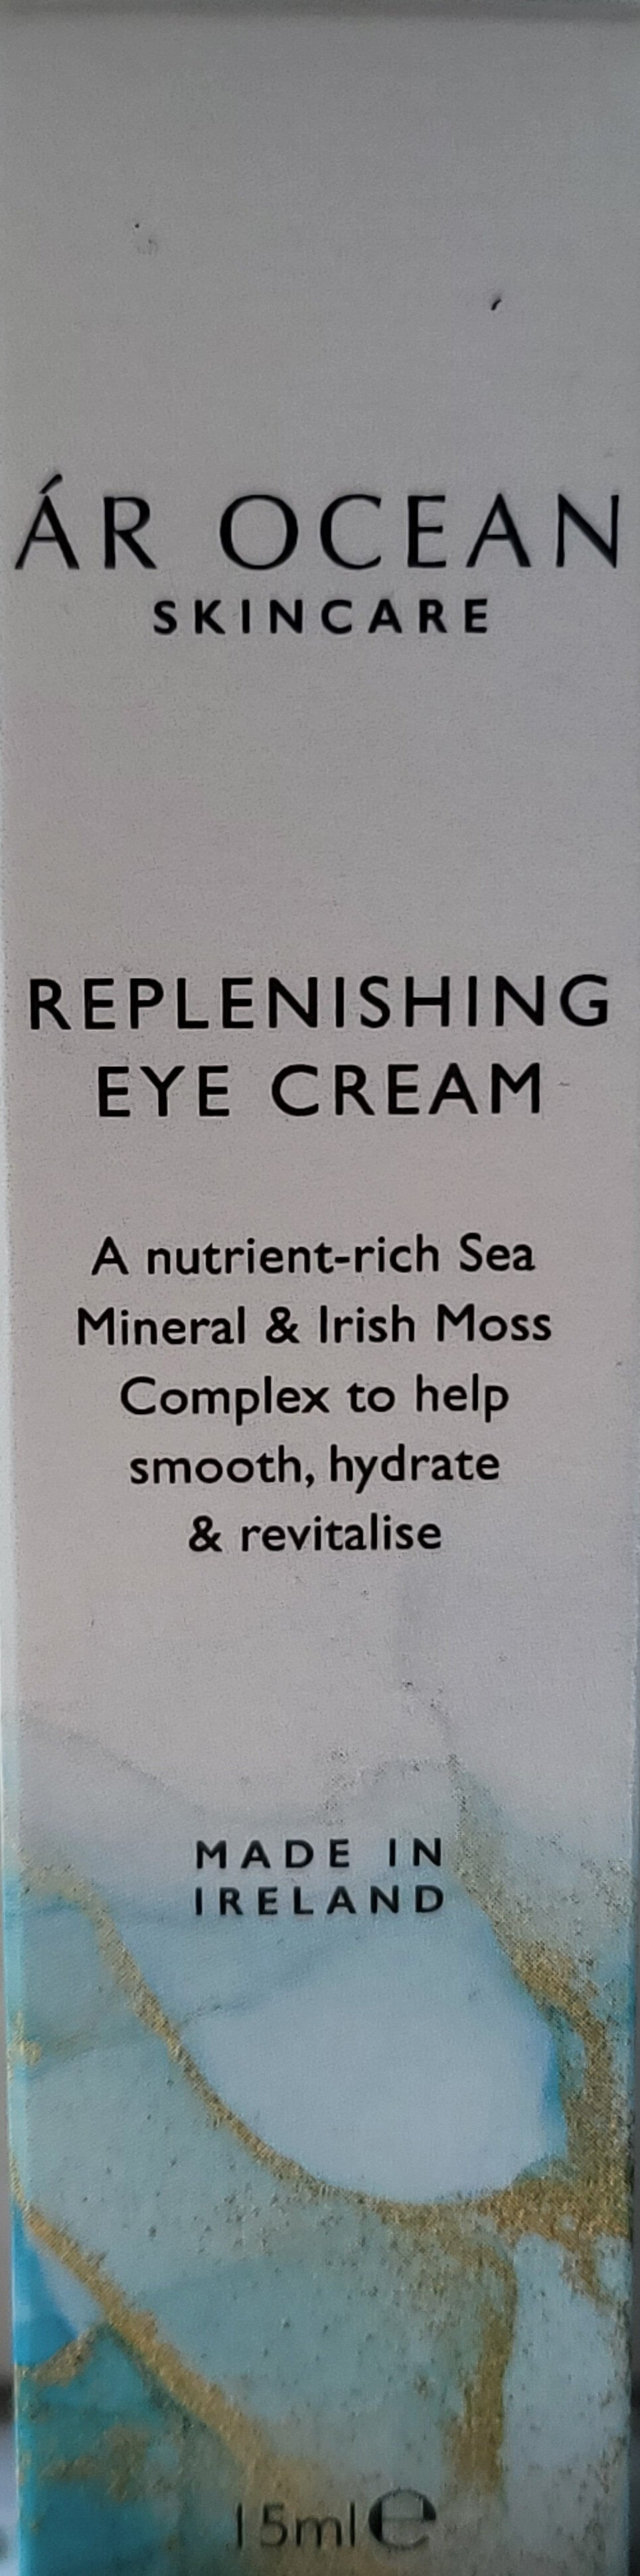 Replenishing Eye Cream - Product - en